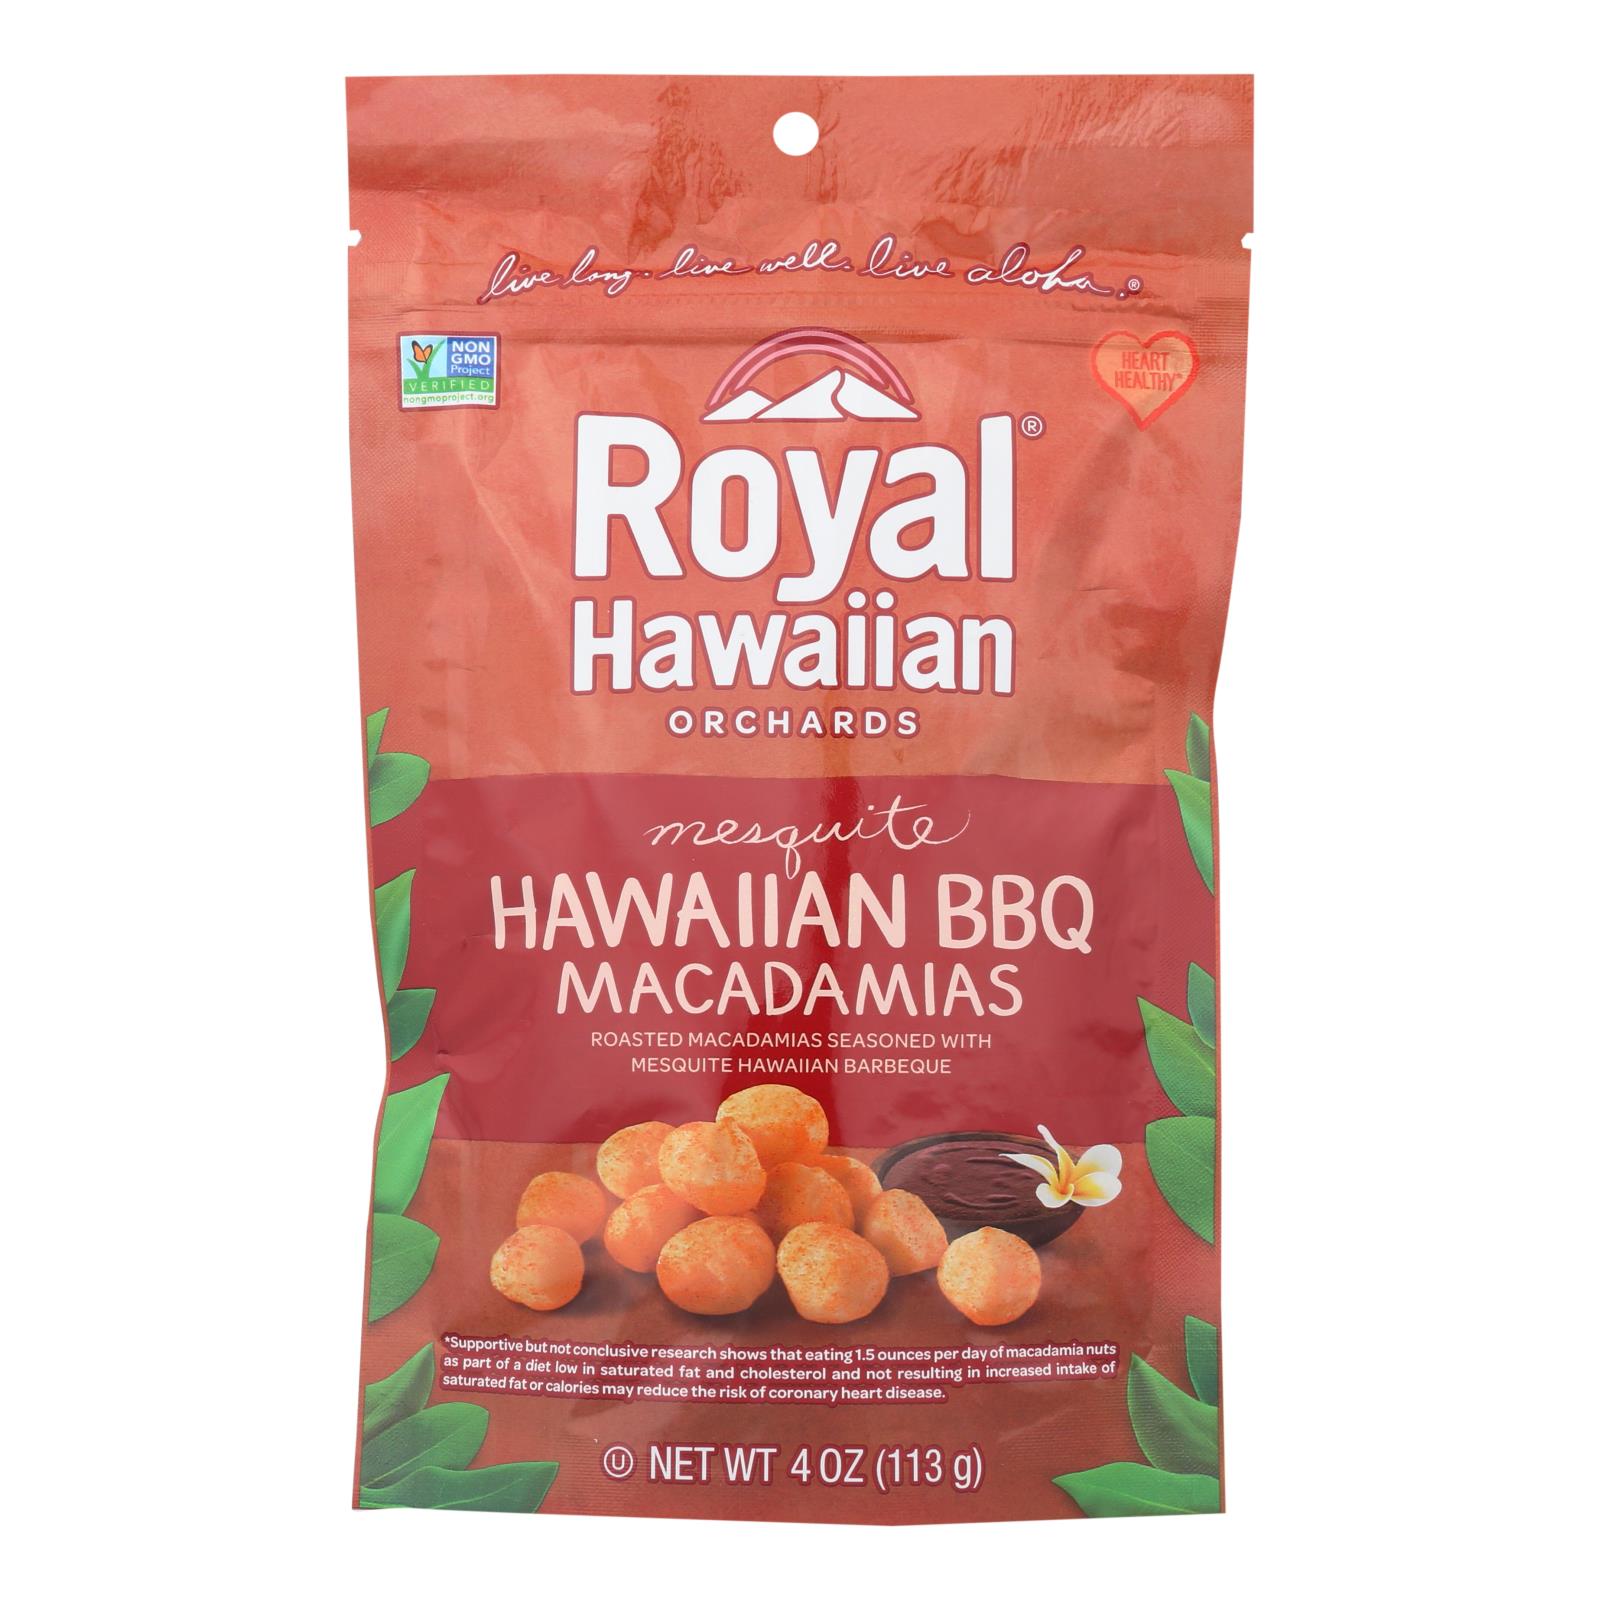 Royal Hawaiian Orchards Macadamias, Mesquite Hawaiian BBQ - Case of 6 - 4 OZ